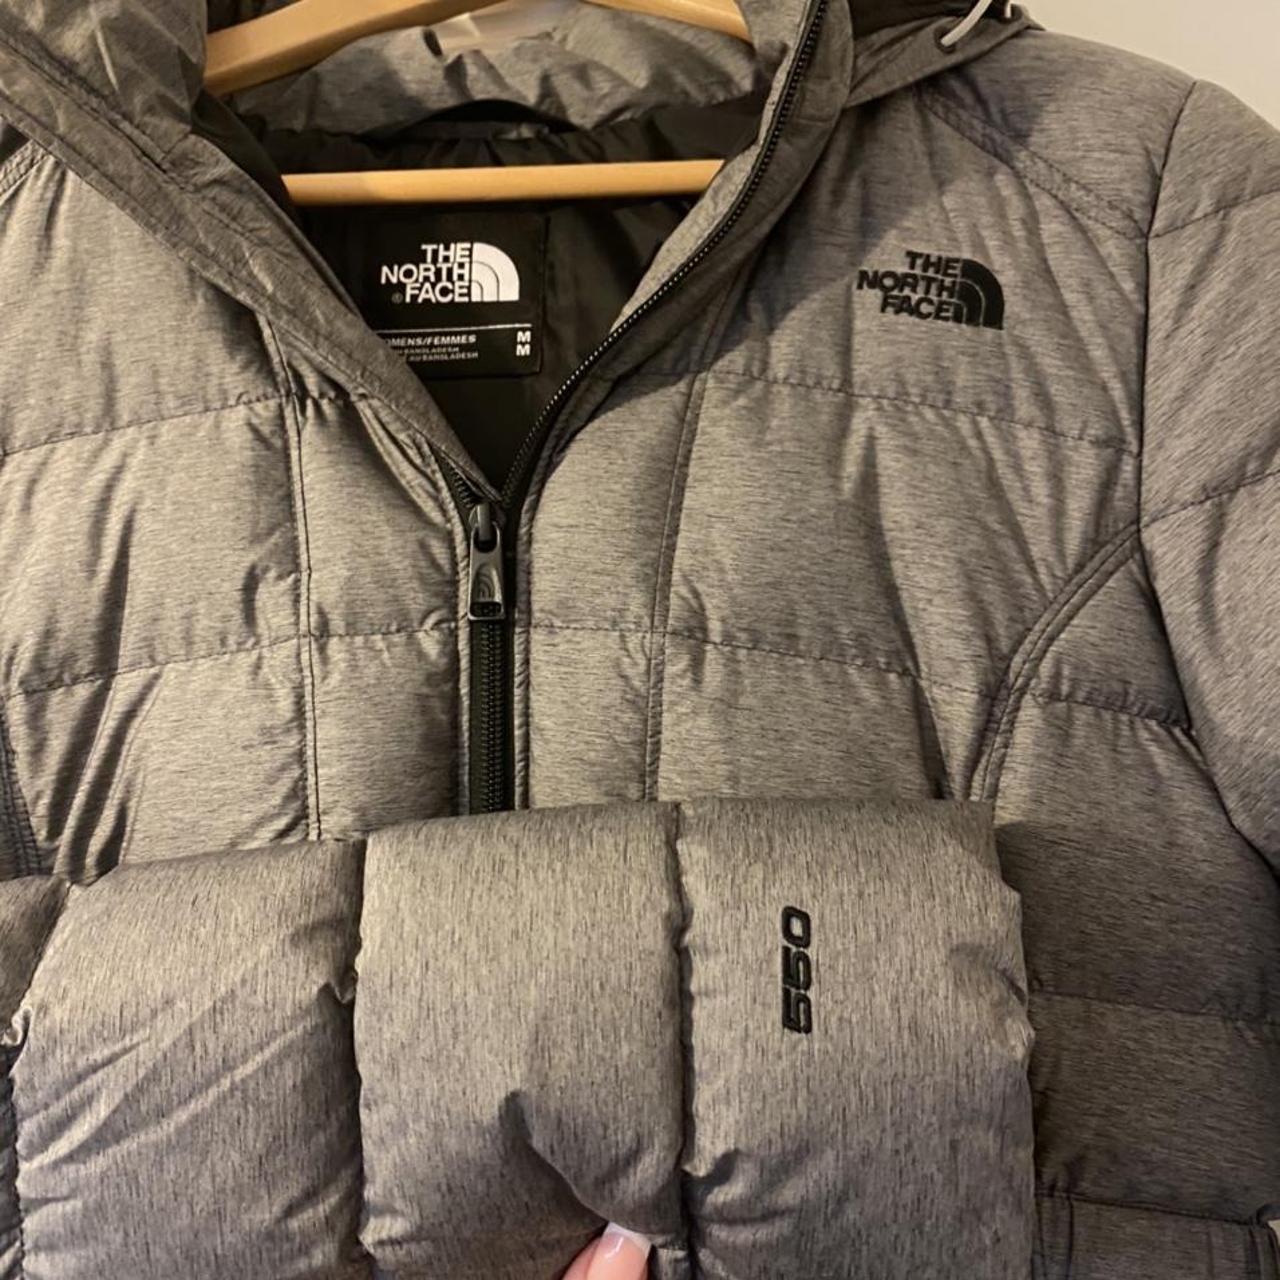 North Face 550 Puffer Jacket in Grey, worn a few... - Depop